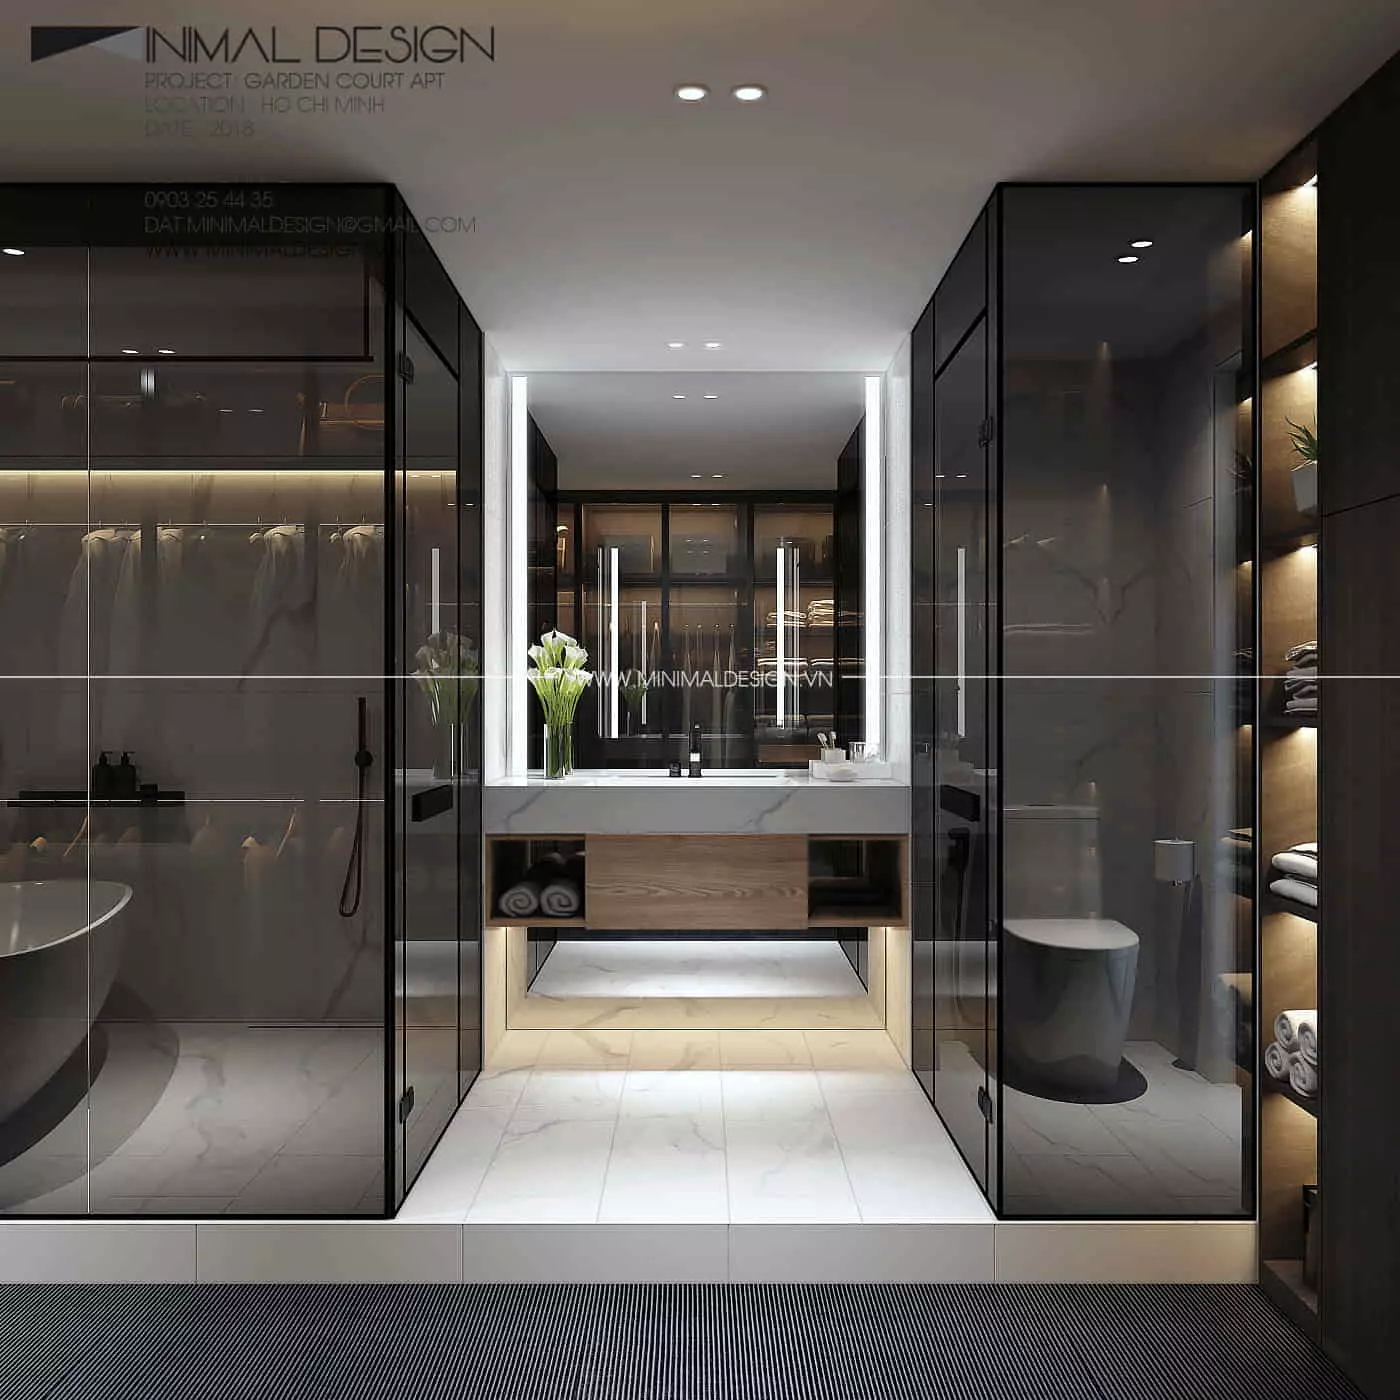 Thiết kế phòng tắm tối giản là cách nhiều người lựa chọn khi thiết kế với mong muốn có một phòng tắm thông thoáng, sạch sẽ và gọn gàng